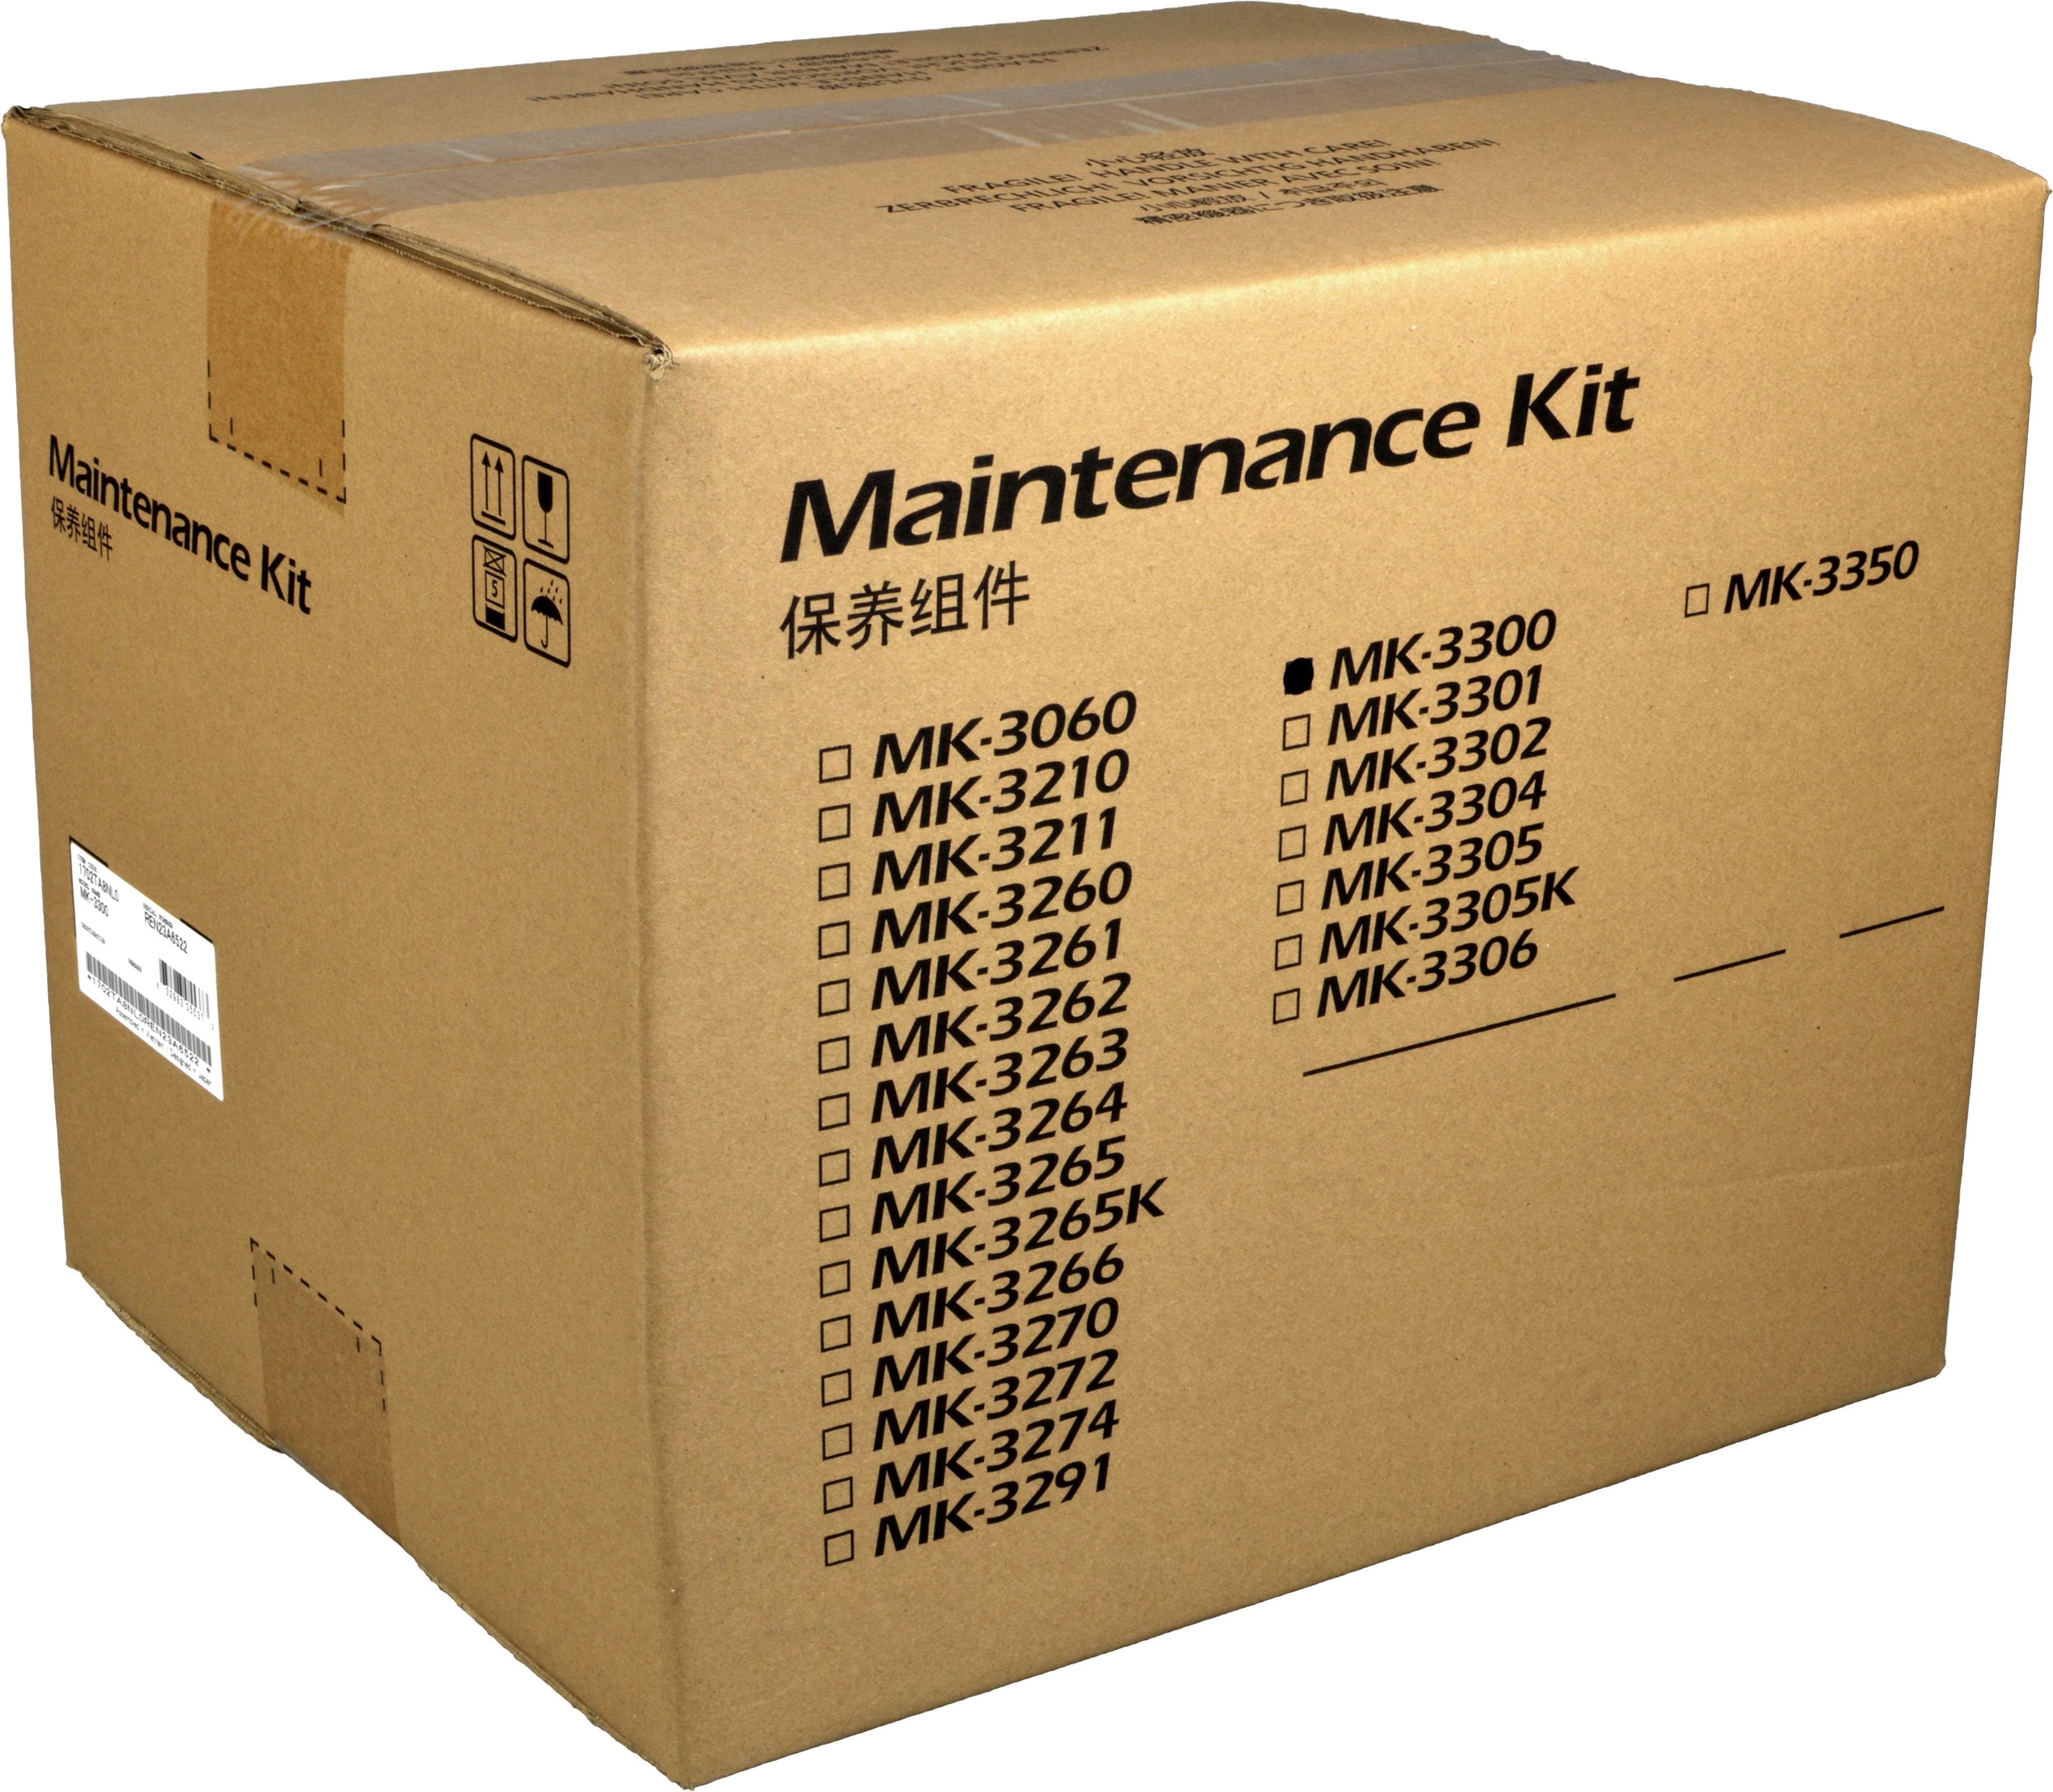 Kyocera Maintenance Kit MK-3300  1702TA8NL0